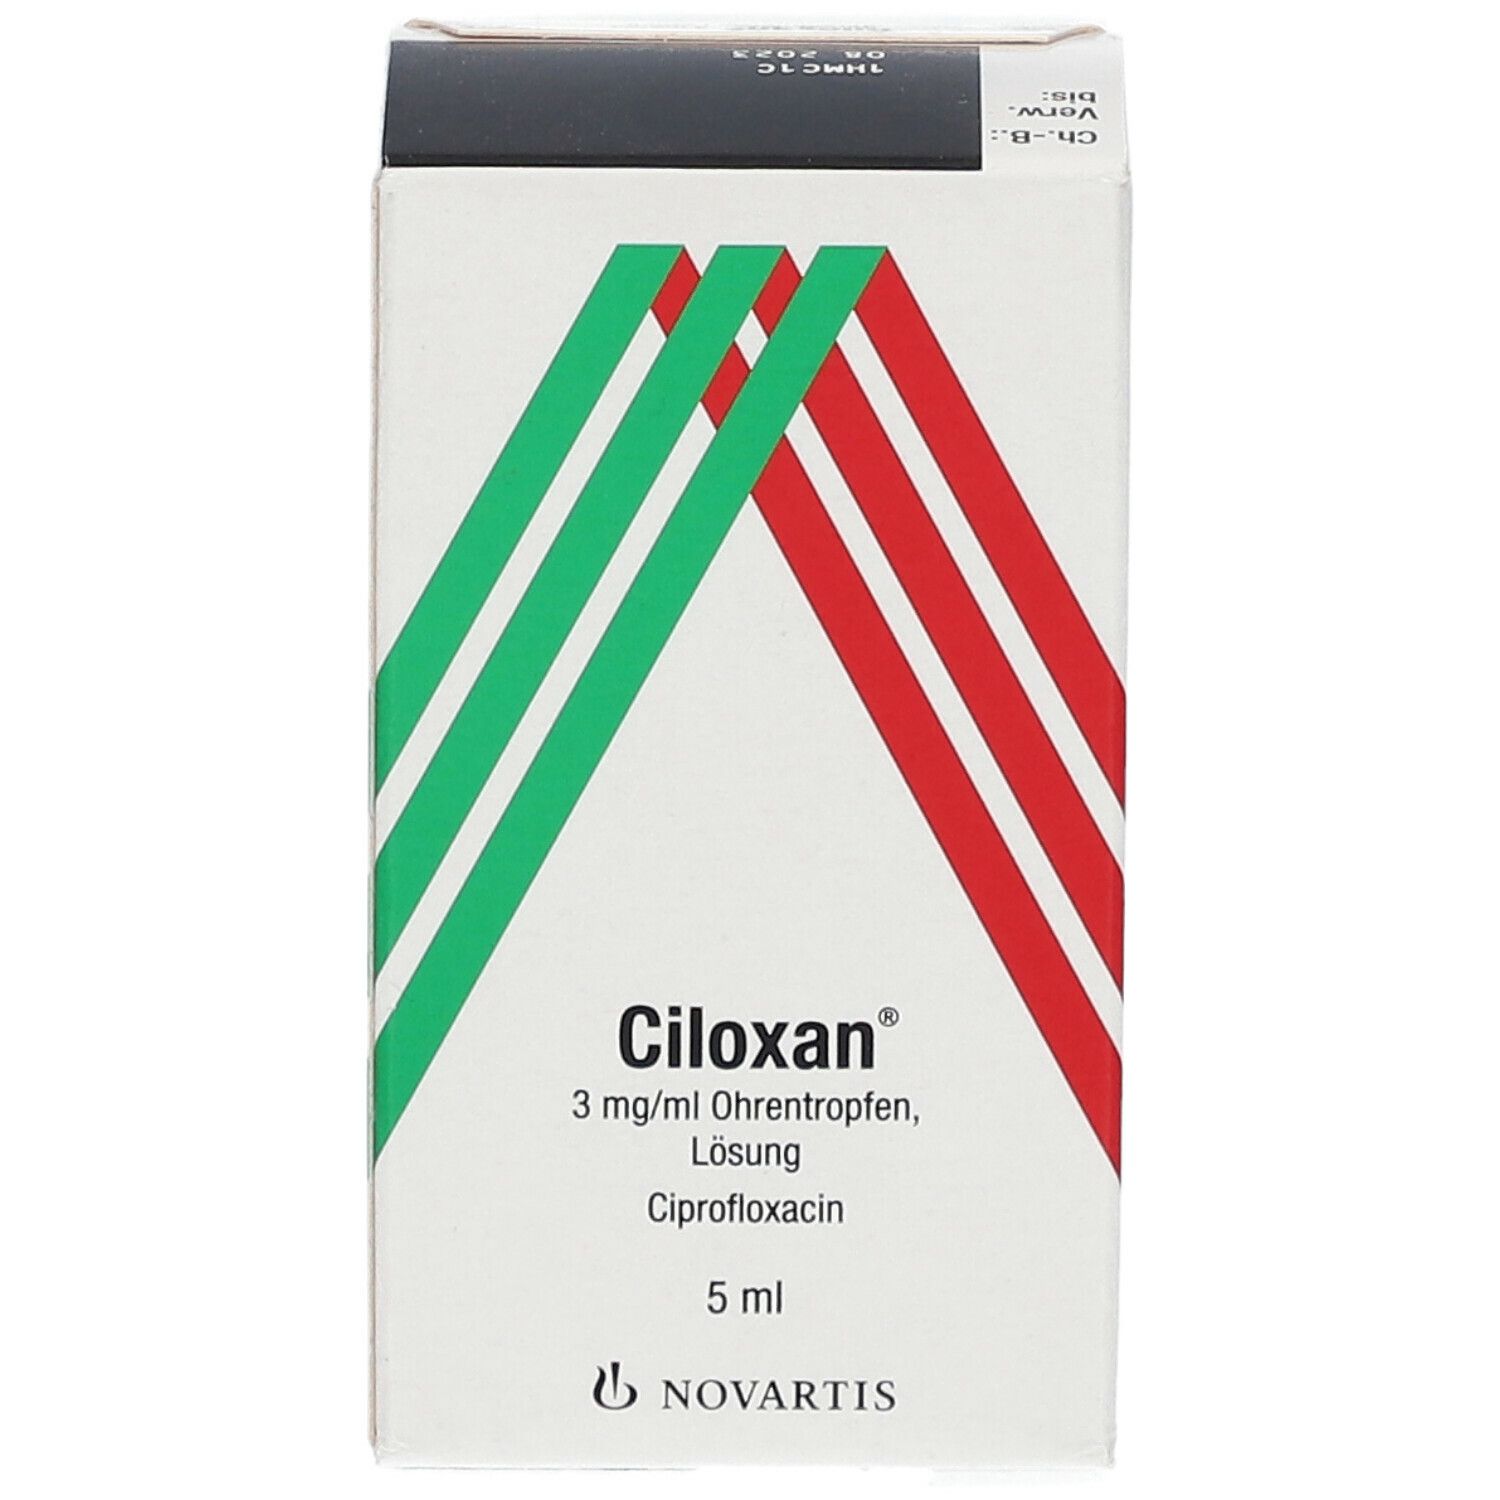 Ciloxan® 3 mg/ml